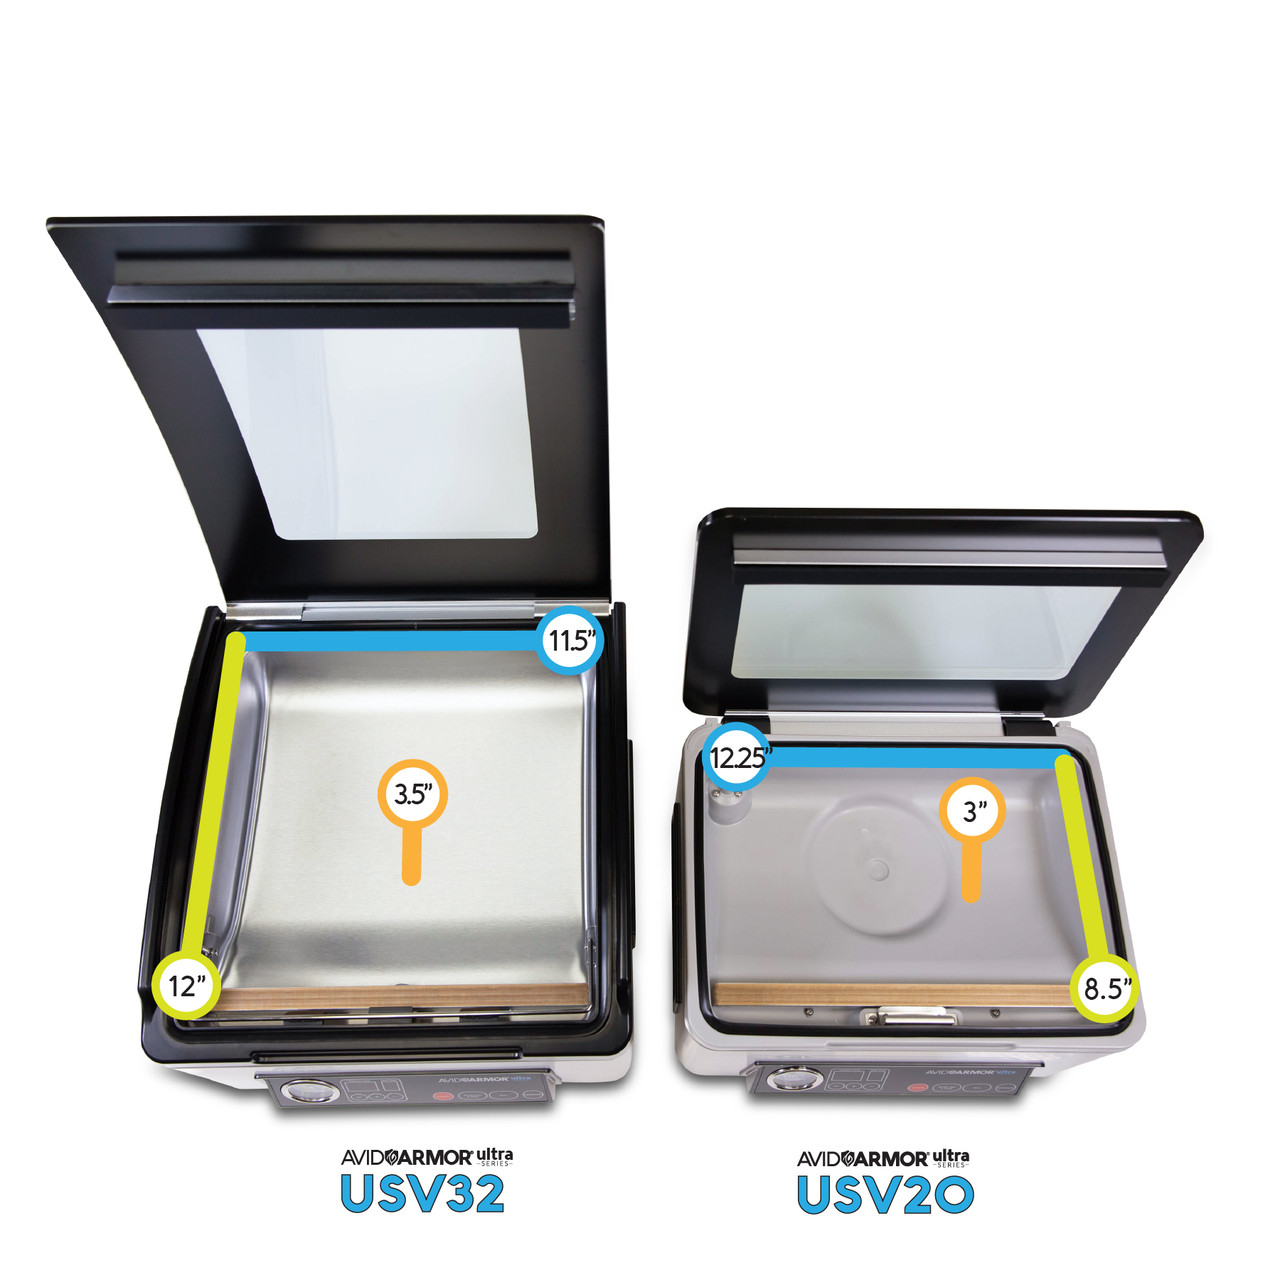 [OPEN BOX] Avid Armor Ultra Series USV20 Chamber Vacuum Sealer System